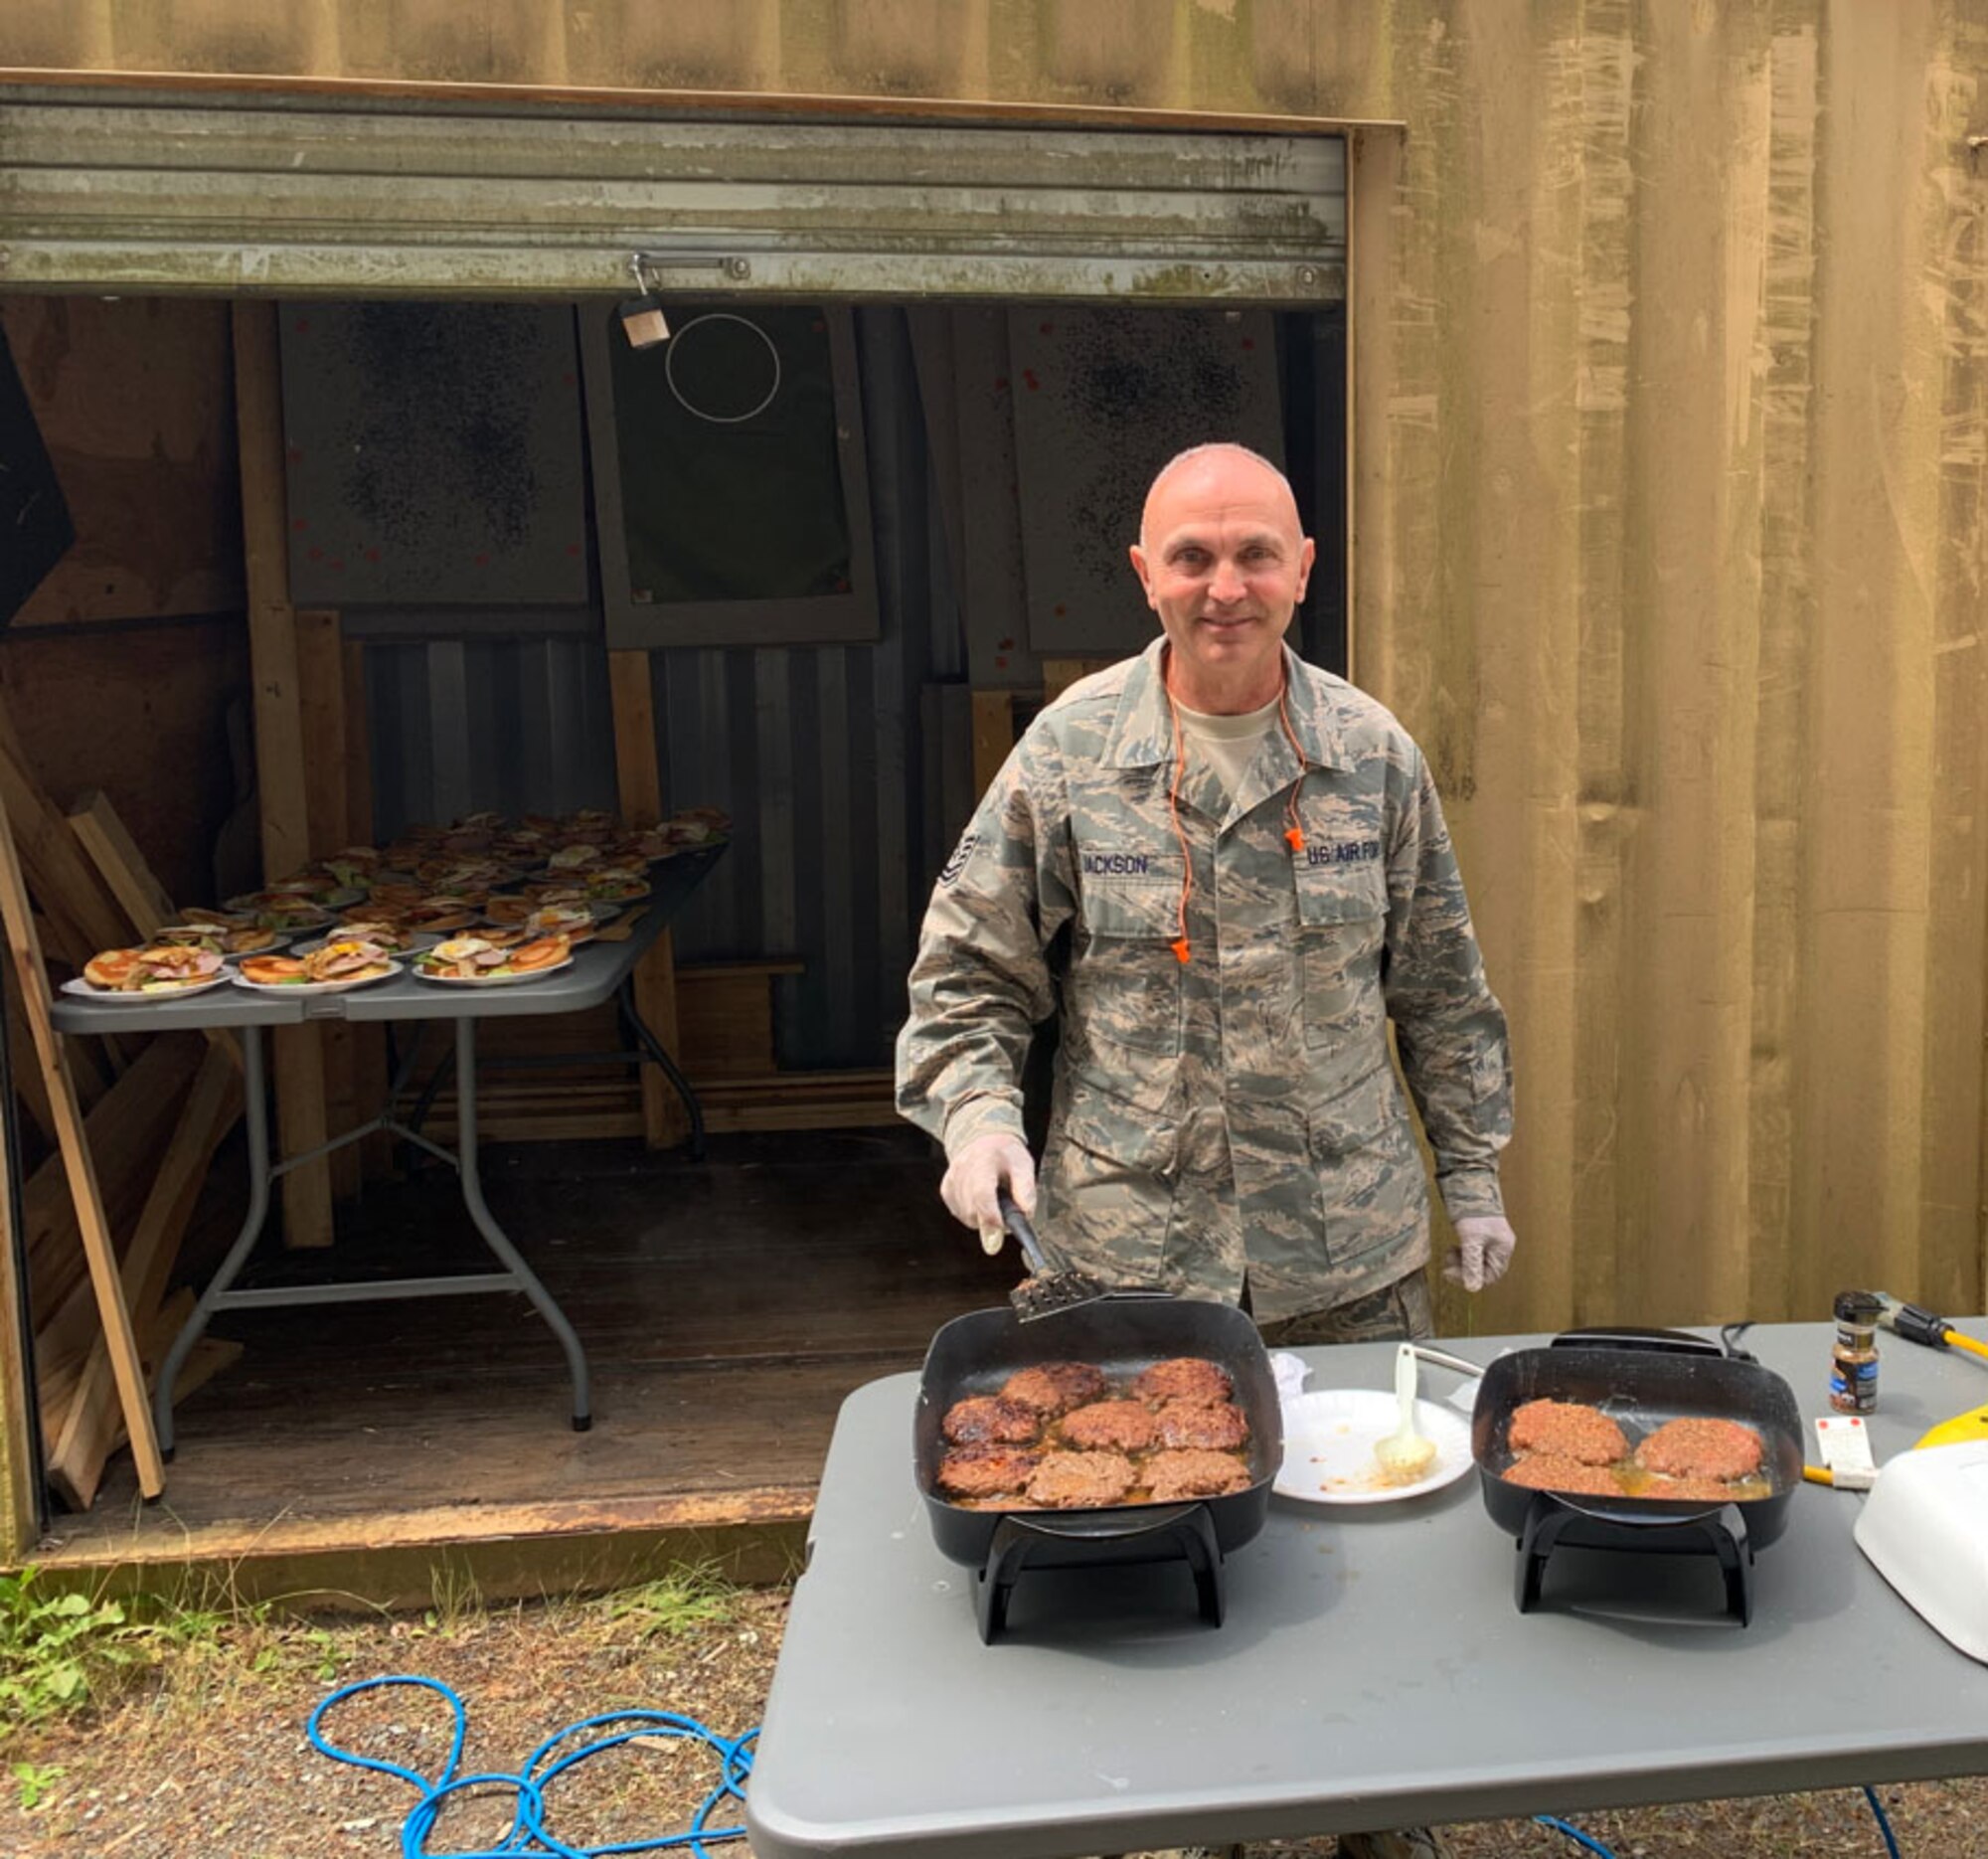 Airman prepares burgers